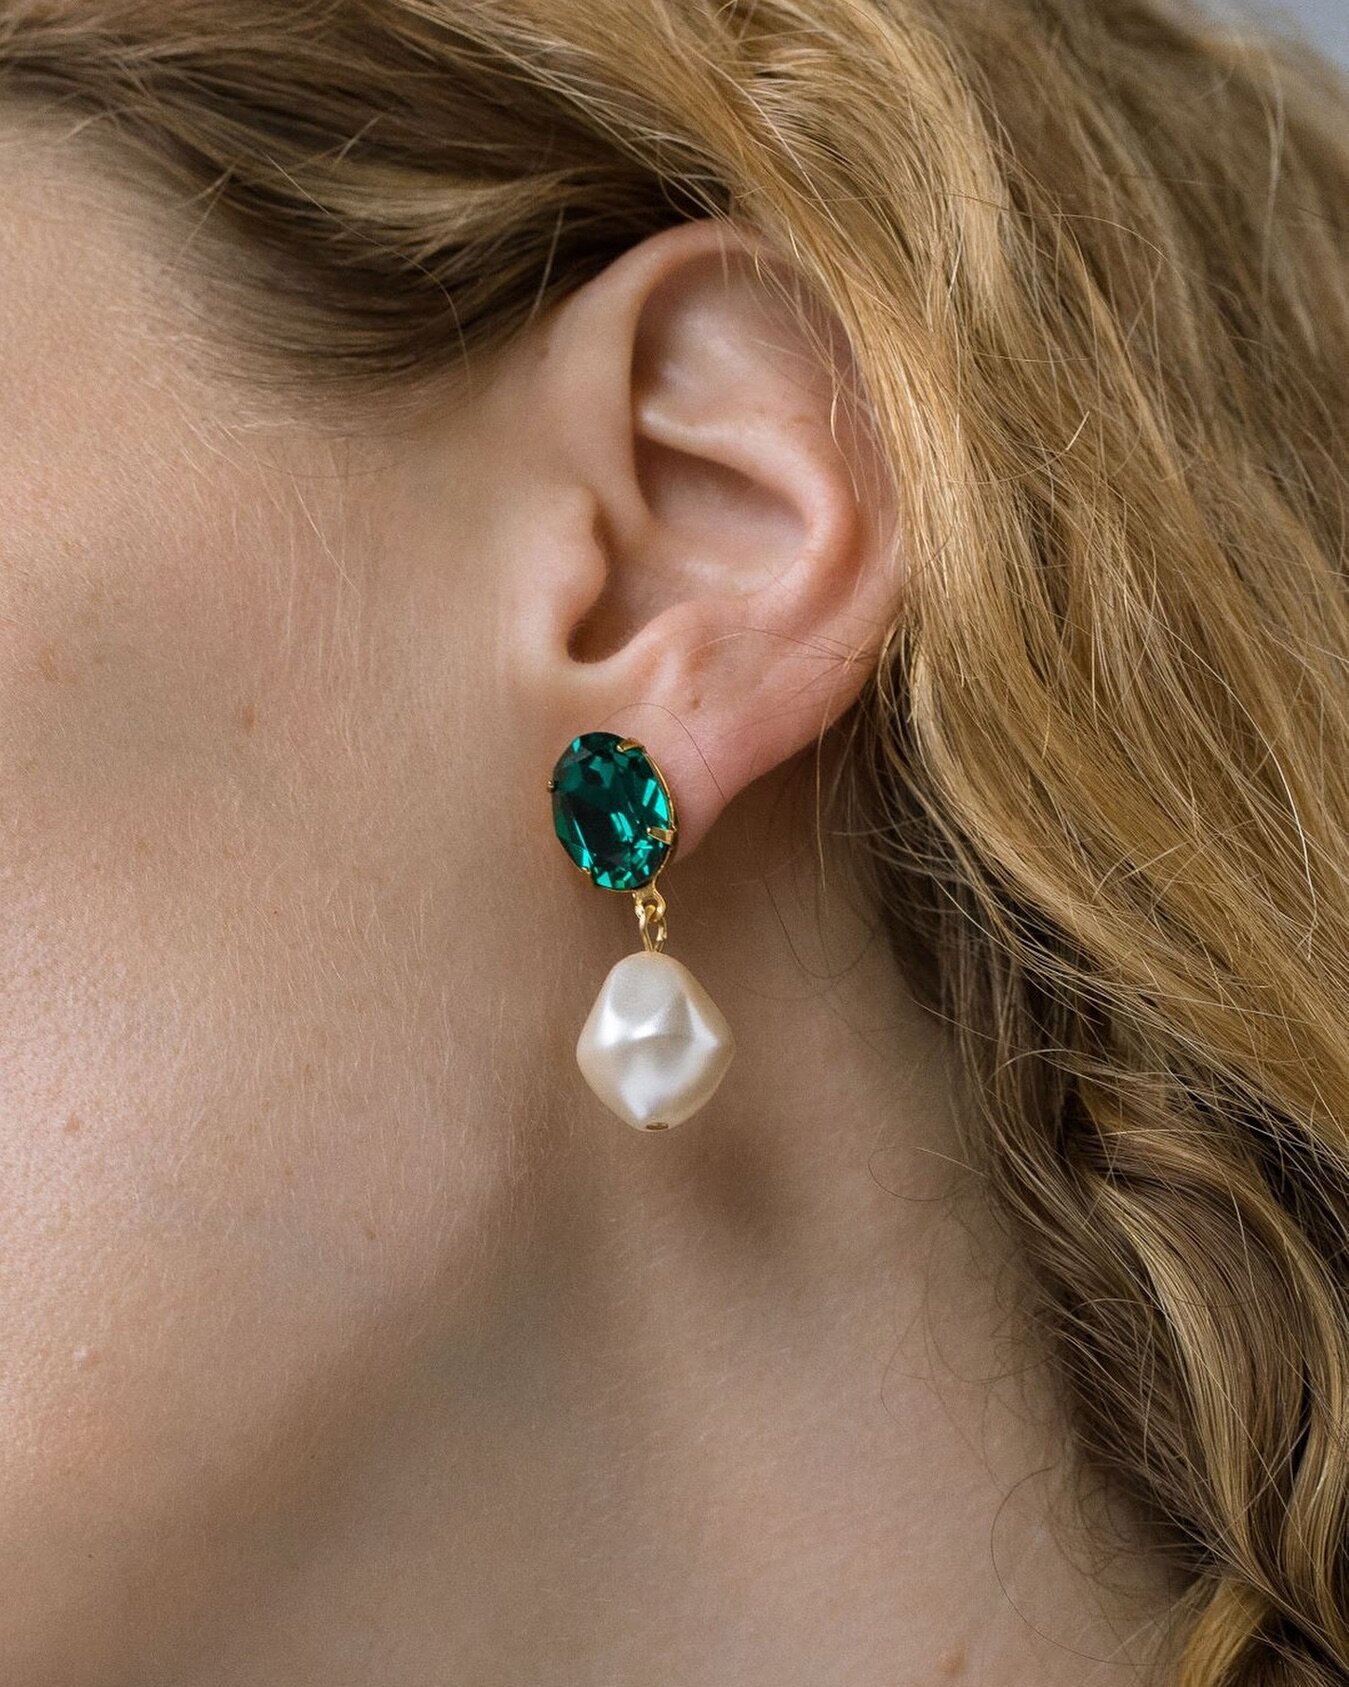 @jenniferbehr Tunis earrings in Emerald 💚

The perfect festive earring! Shops yours now

#jenniferbehr